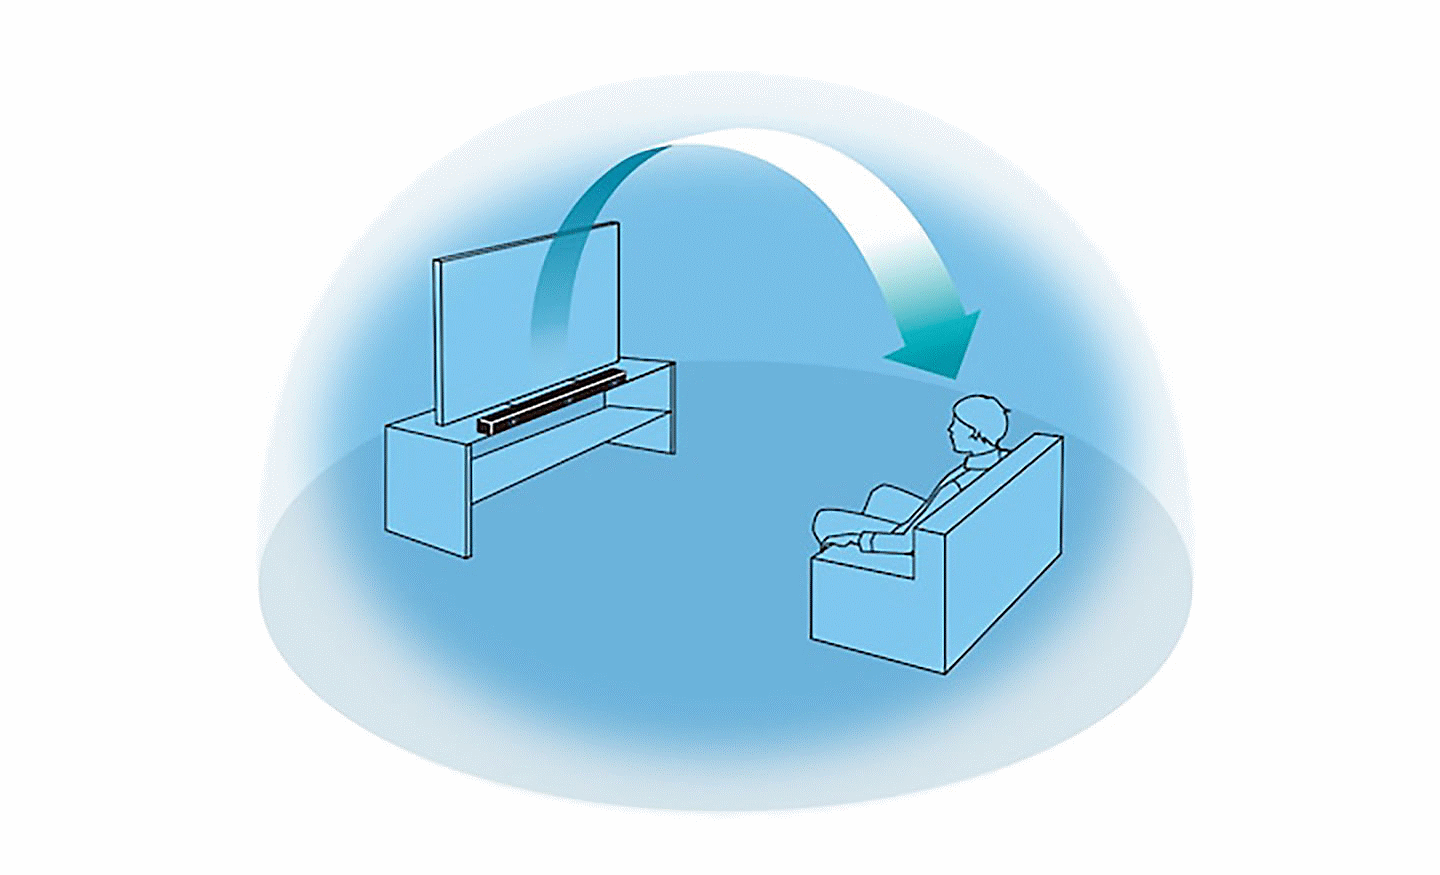 Εικόνα ενός μπλε θόλου μέσα στον οποίο κάθεται ένας άνθρωπος μπροστά από μια τηλεόραση και ένα soundbar, ένα βέλος ξεκινά από το soundbar και κατευθύνεται προς τον άνθρωπο